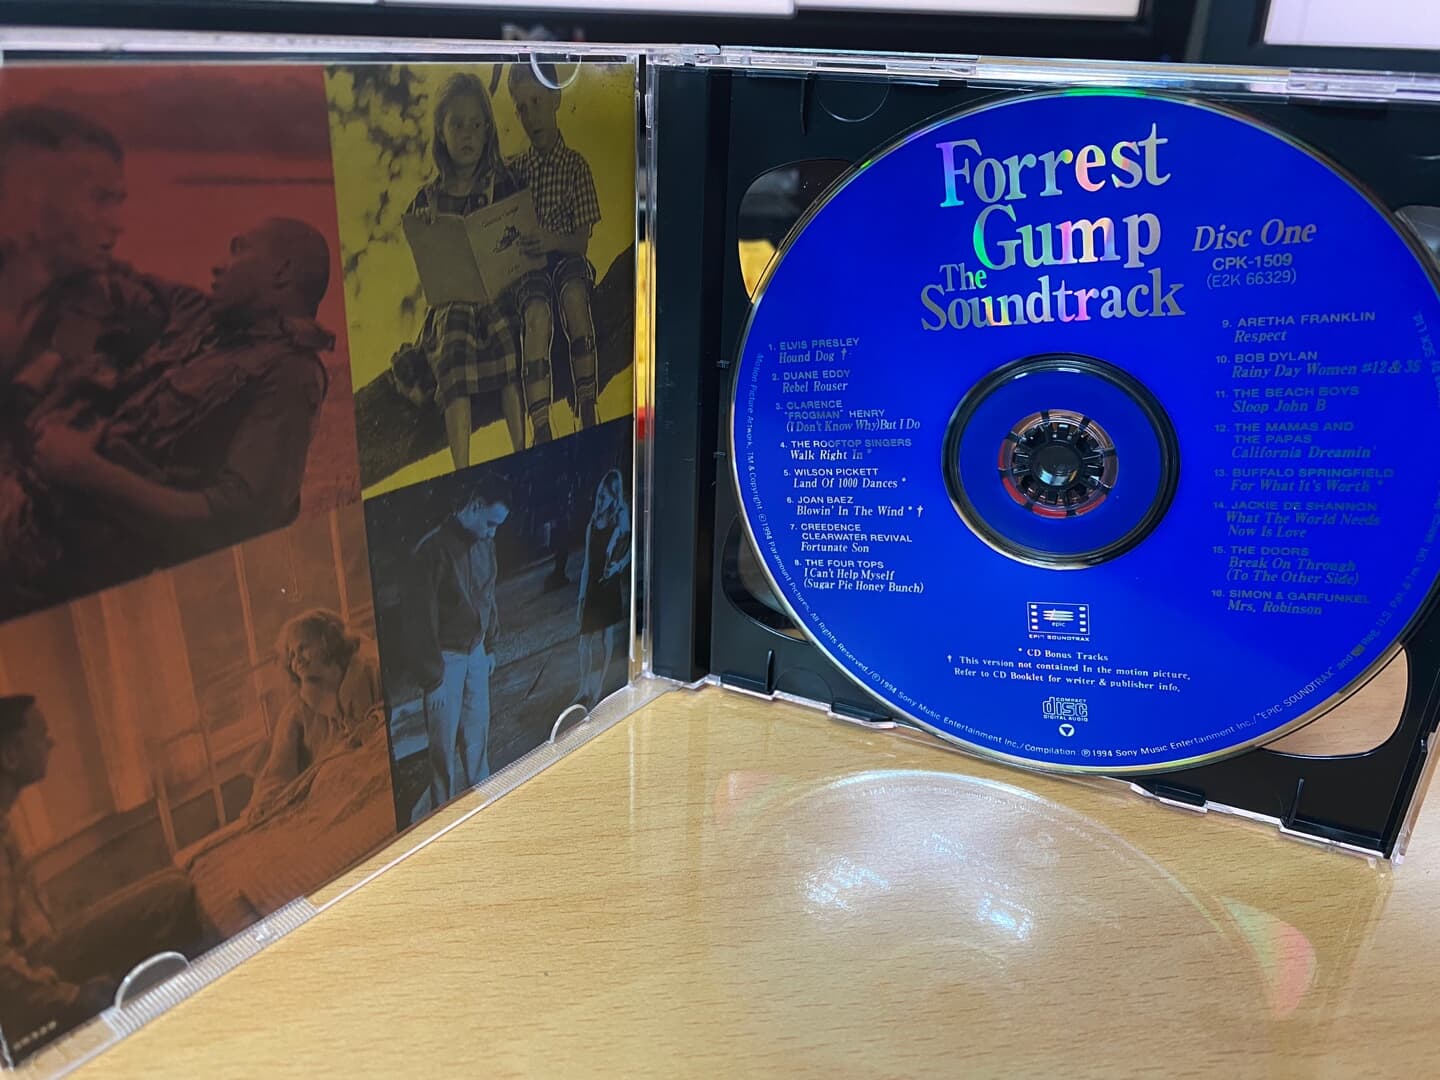 포레스트 검프 - Forrest Gump OST 2Cds [E.U발매]